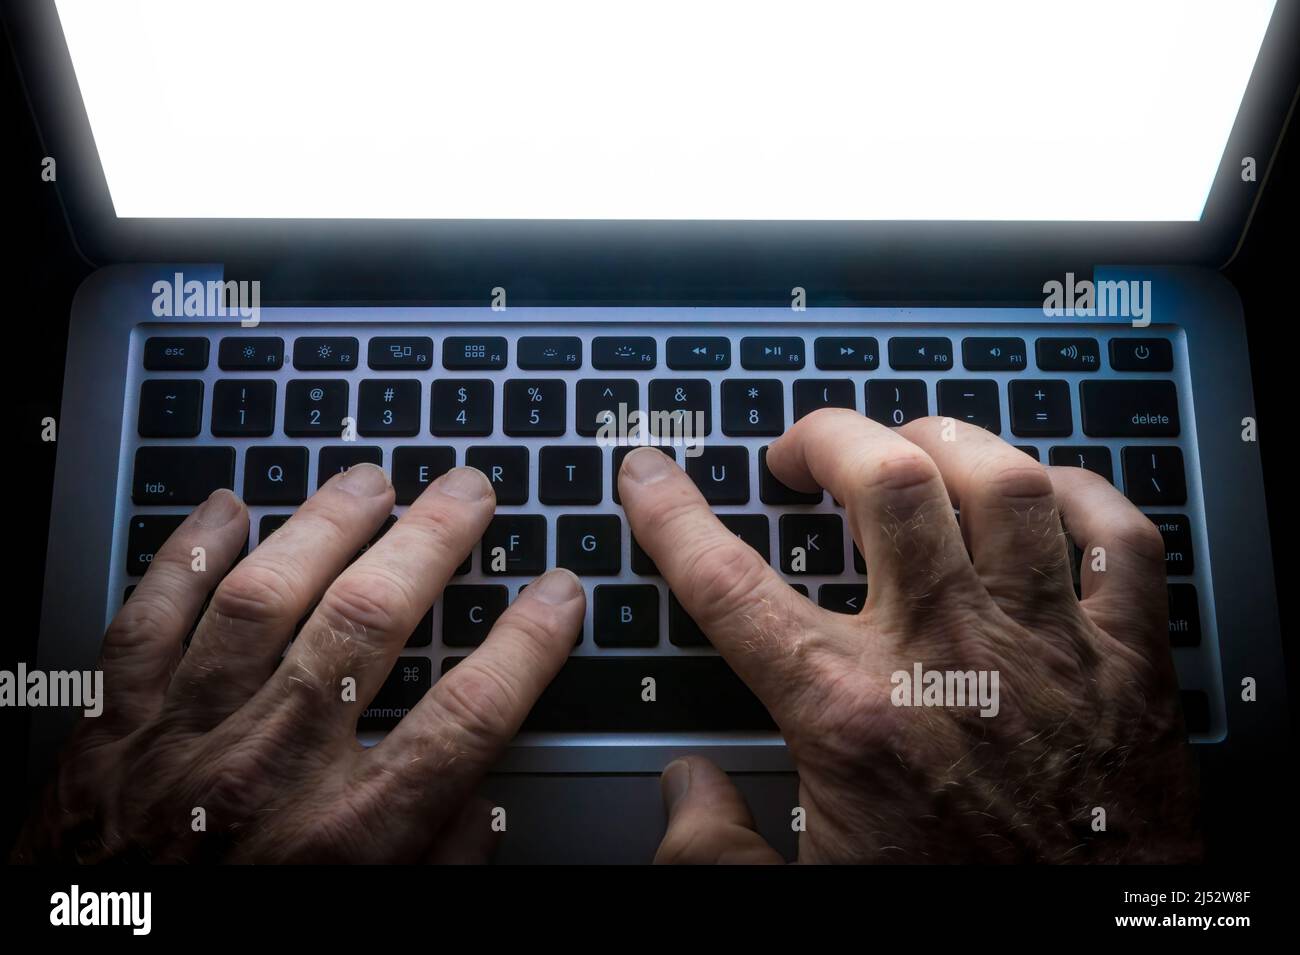 Détail de la saisie manuelle sur un clavier d'ordinateur avec écran lumineux Banque D'Images